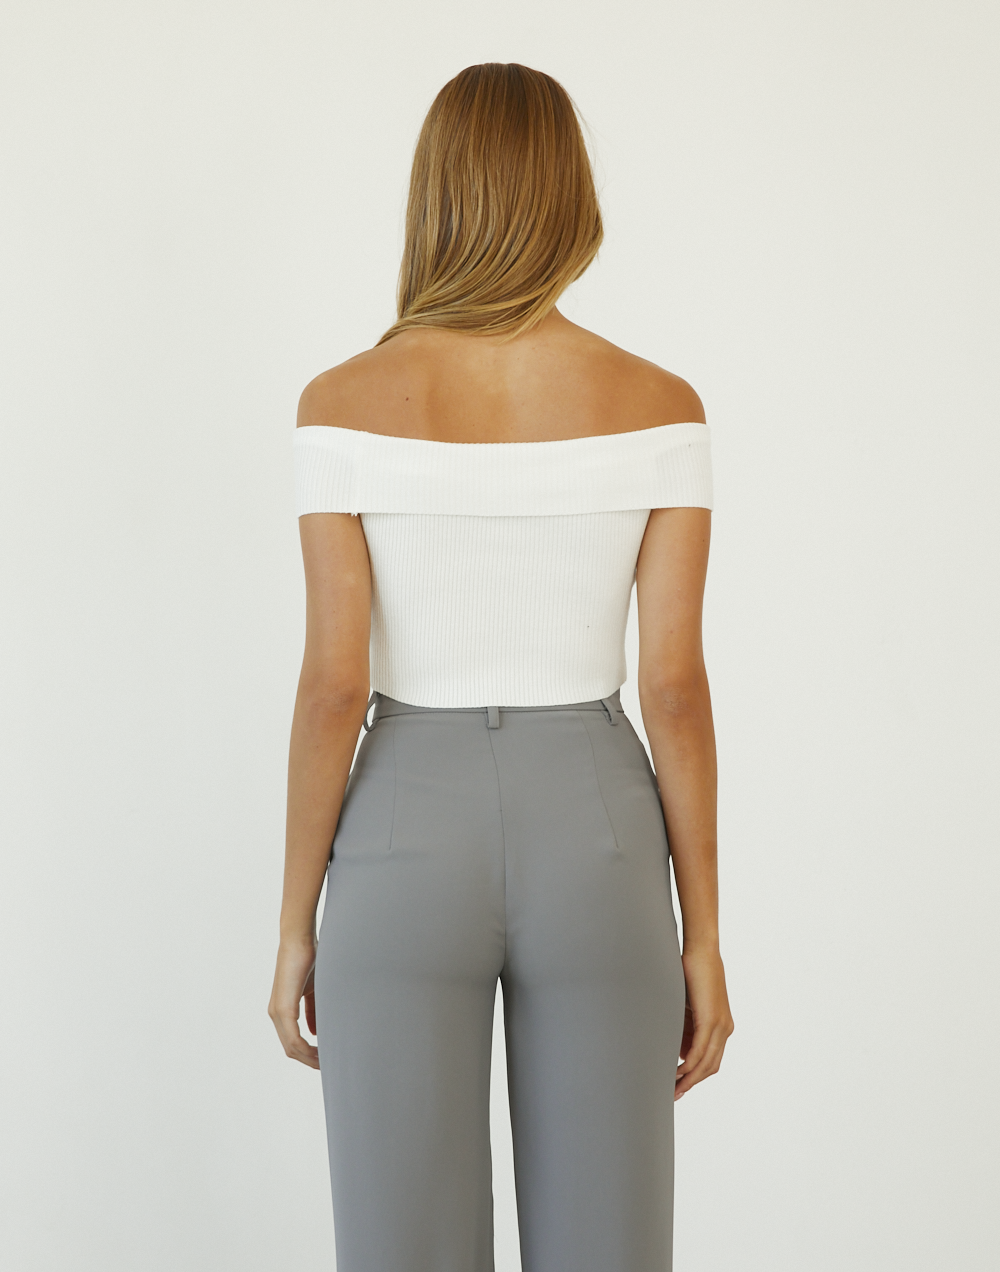 Kallista Crop Top (White) - Off The Shoulder Crop Top - Women's Top - Charcoal Clothing